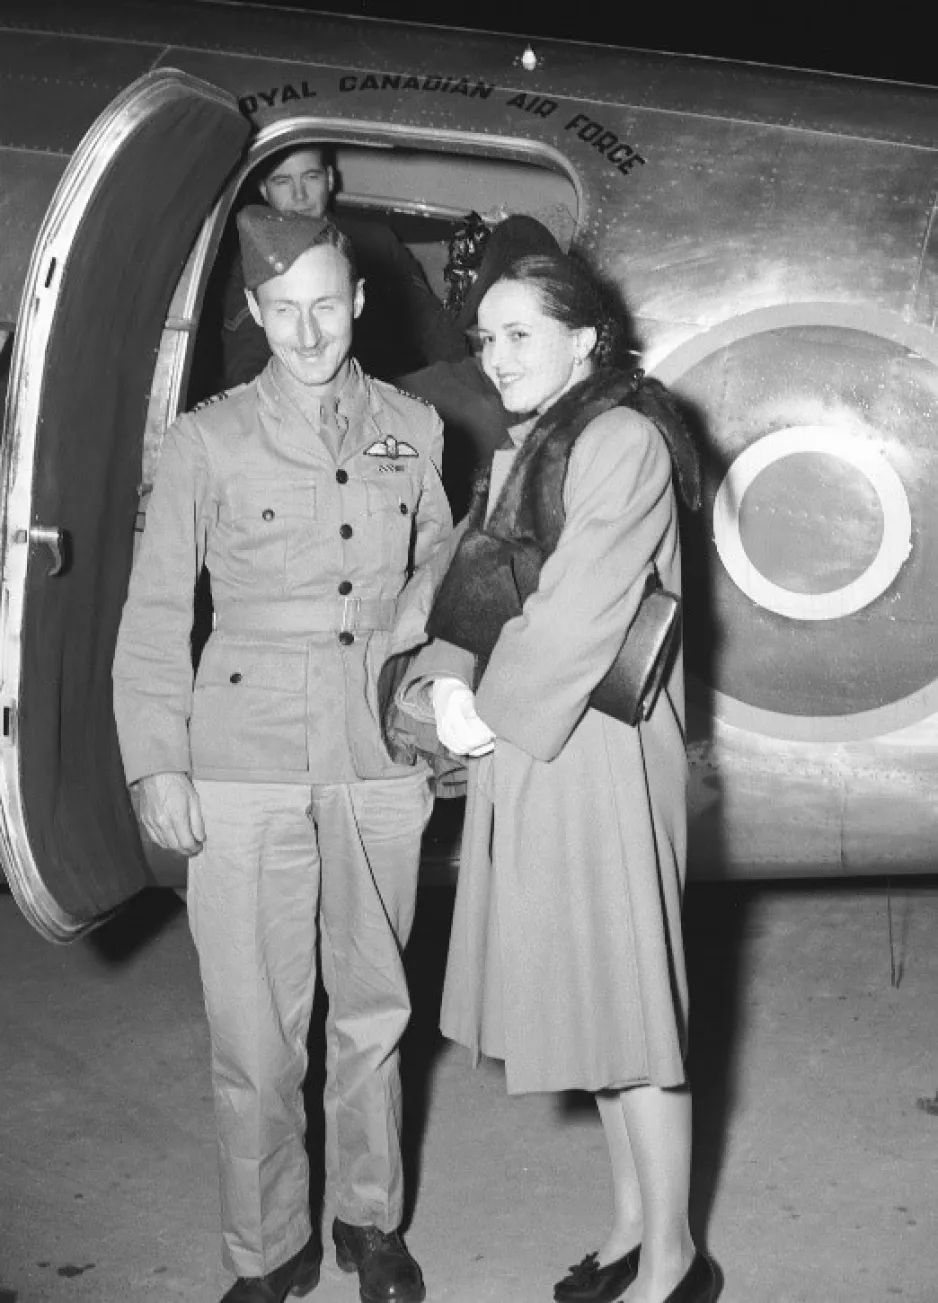 Une image en noir et blanc présente un jeune homme en uniforme militaire, debout près d’une jeune femme portant des vêtements élégants et des talons hauts. Sur l’avion derrière eux on peut lire « Royal Canadian Air Force ».